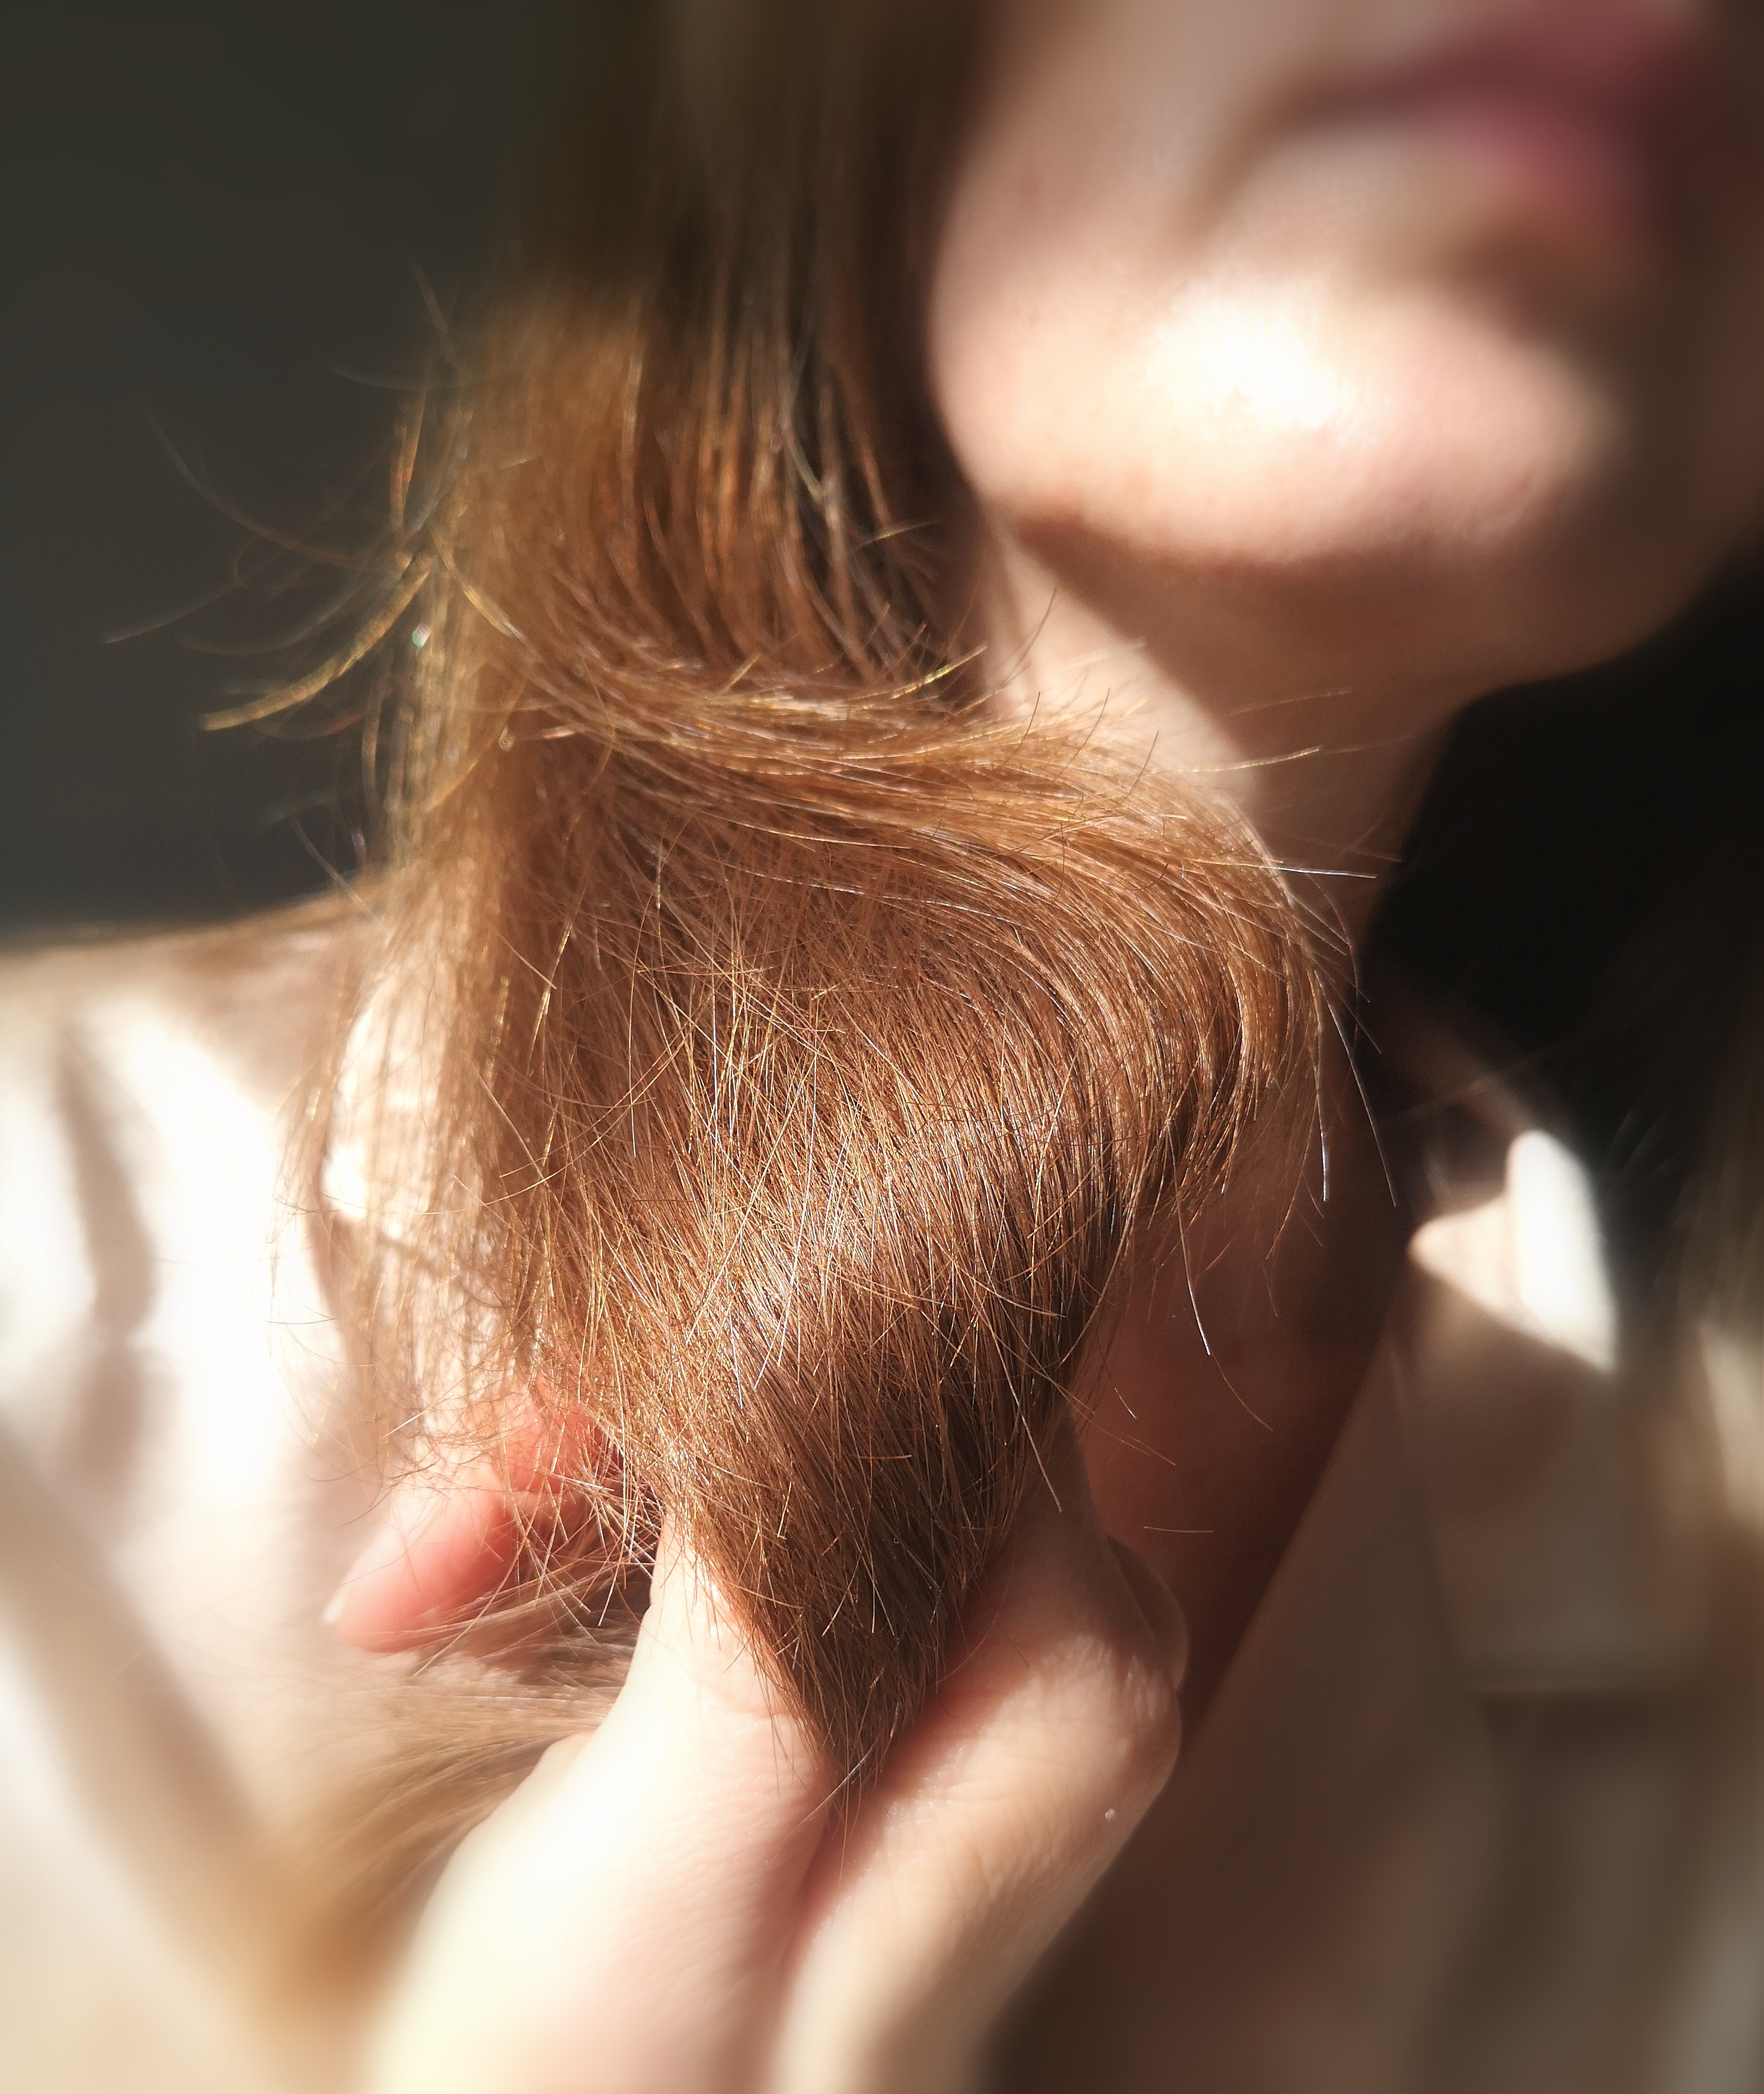 Нічне лікування волосся від Kerastase. Нове для мене та мега ефективне по дії.